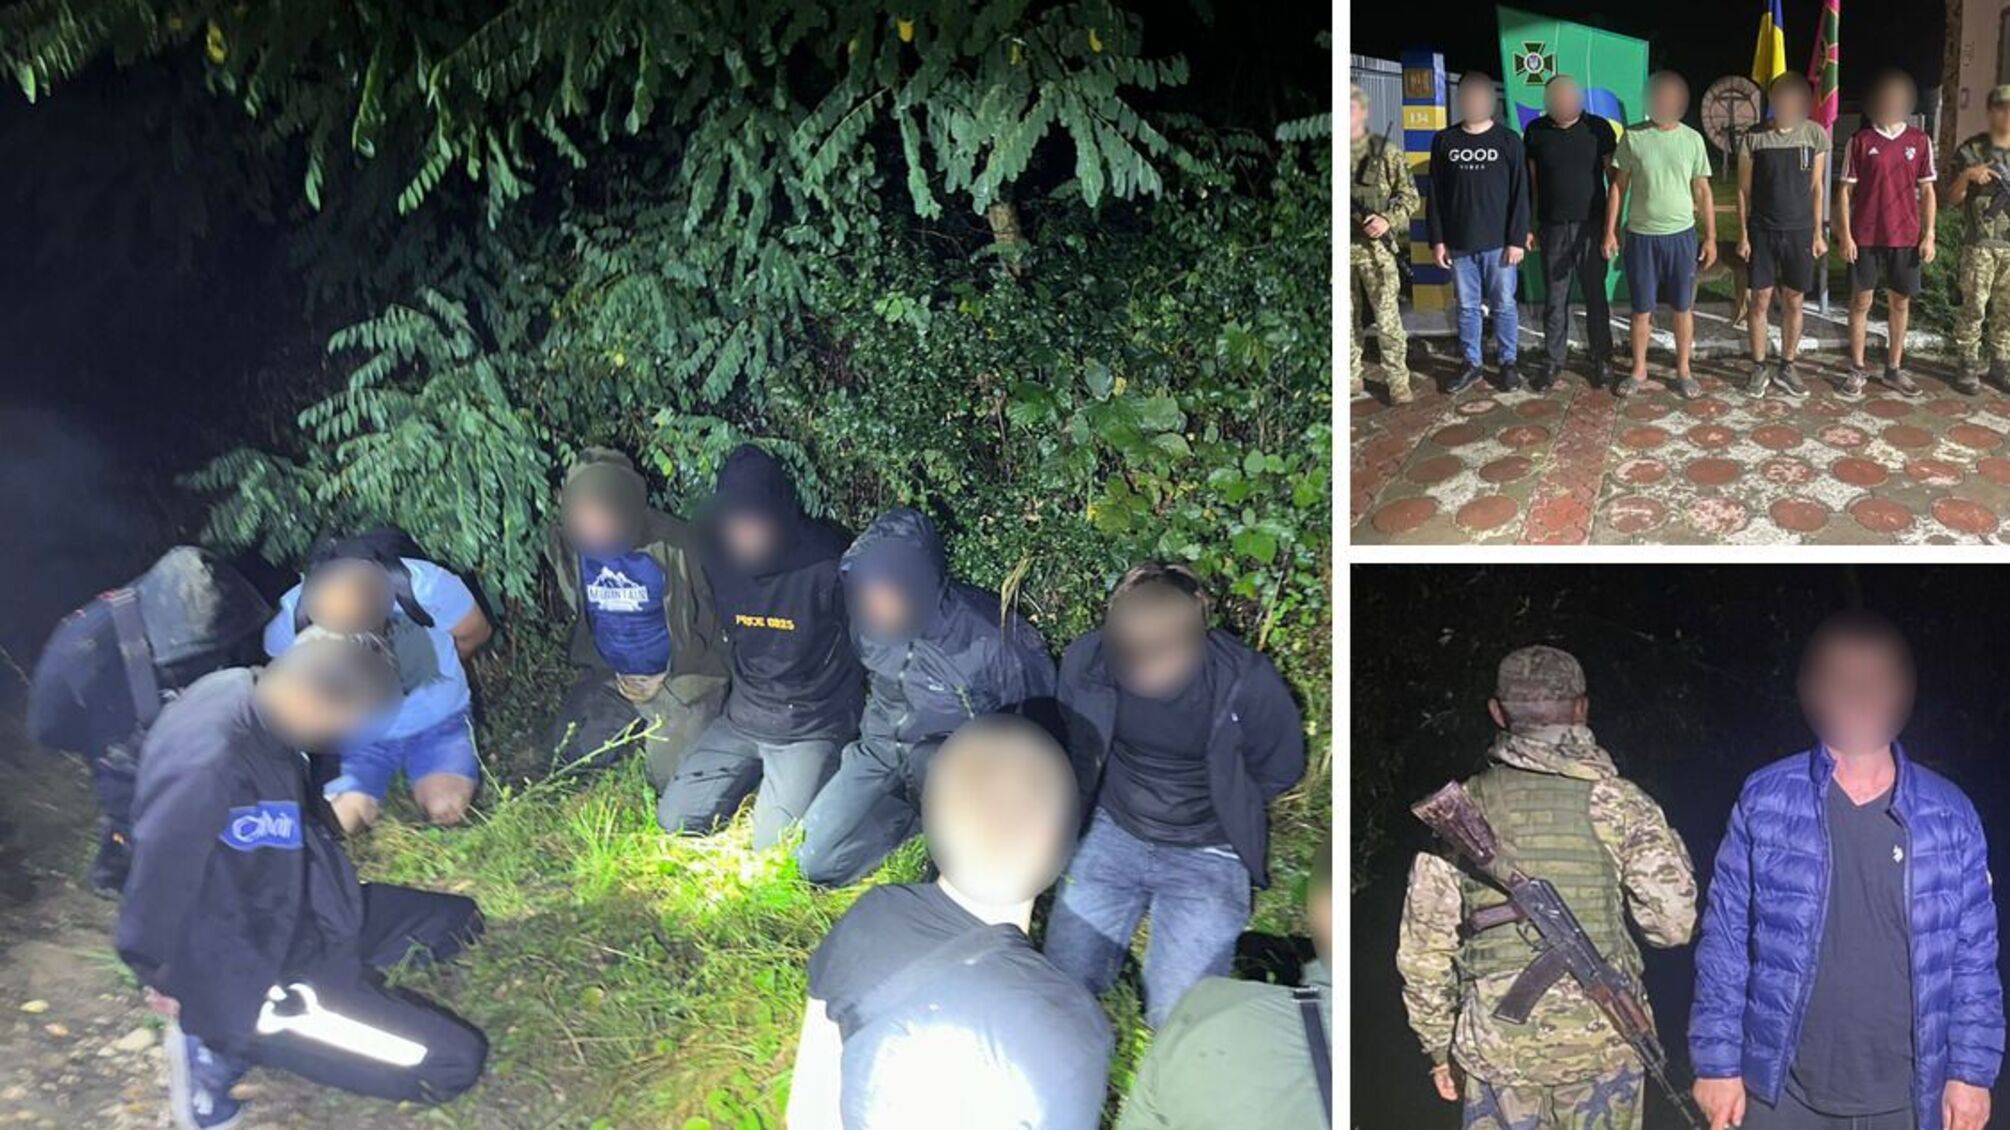 'Десант' в Венгрию и Румынию: в Закарпатье сотрудники ГНСУ поймали 34 нарушителя границы за сутки